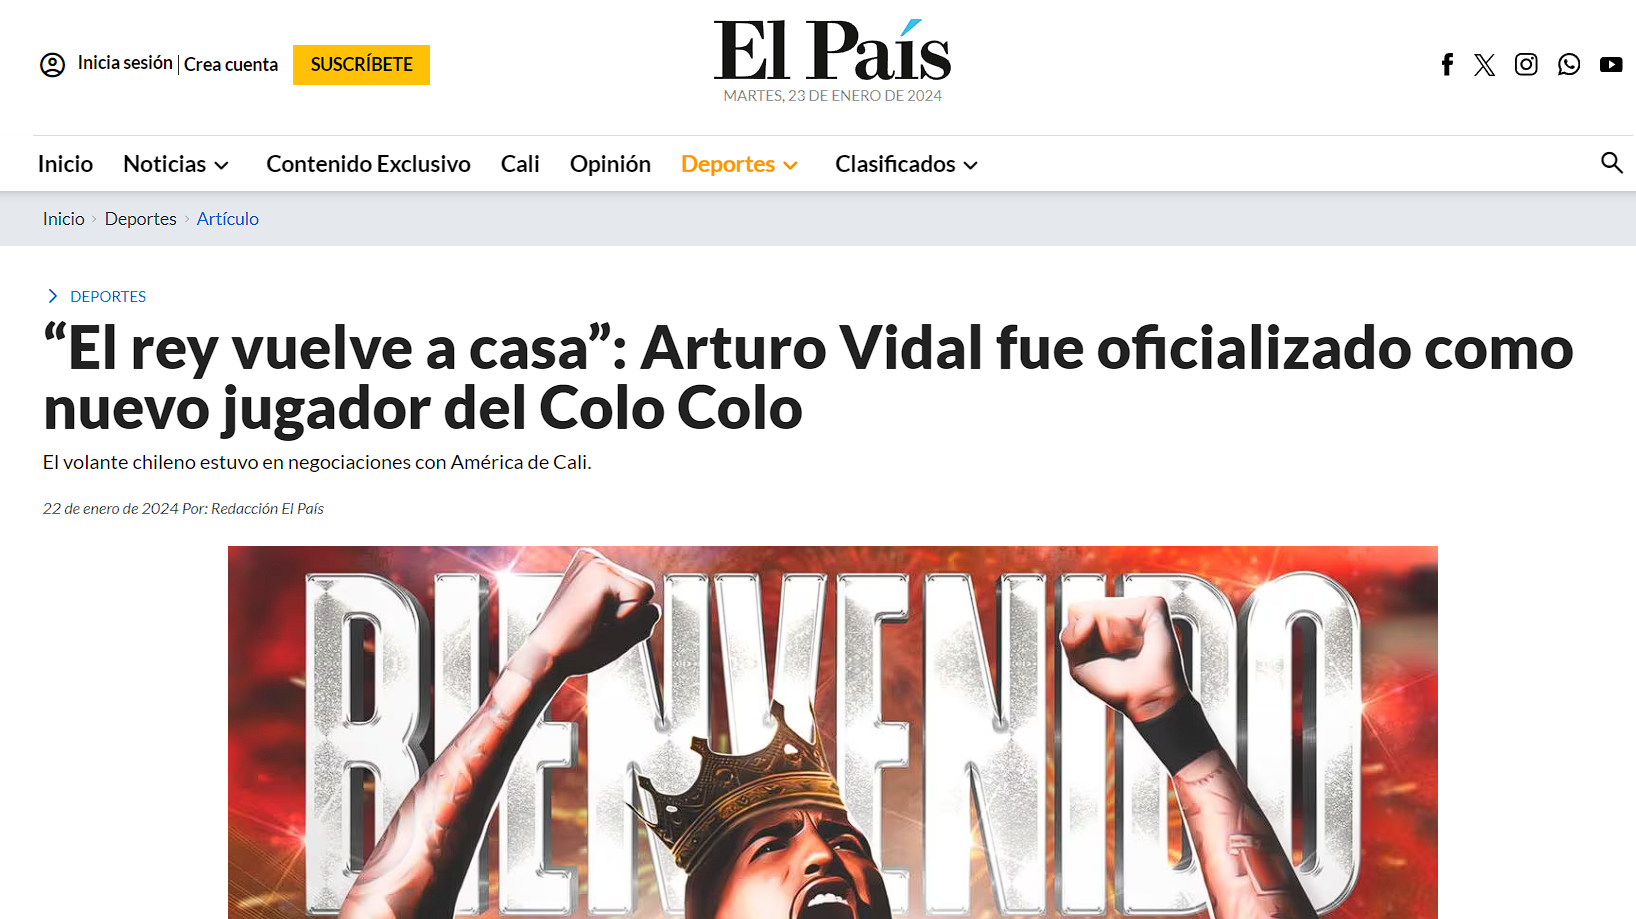 Noticia de Arturo Vidal en El País